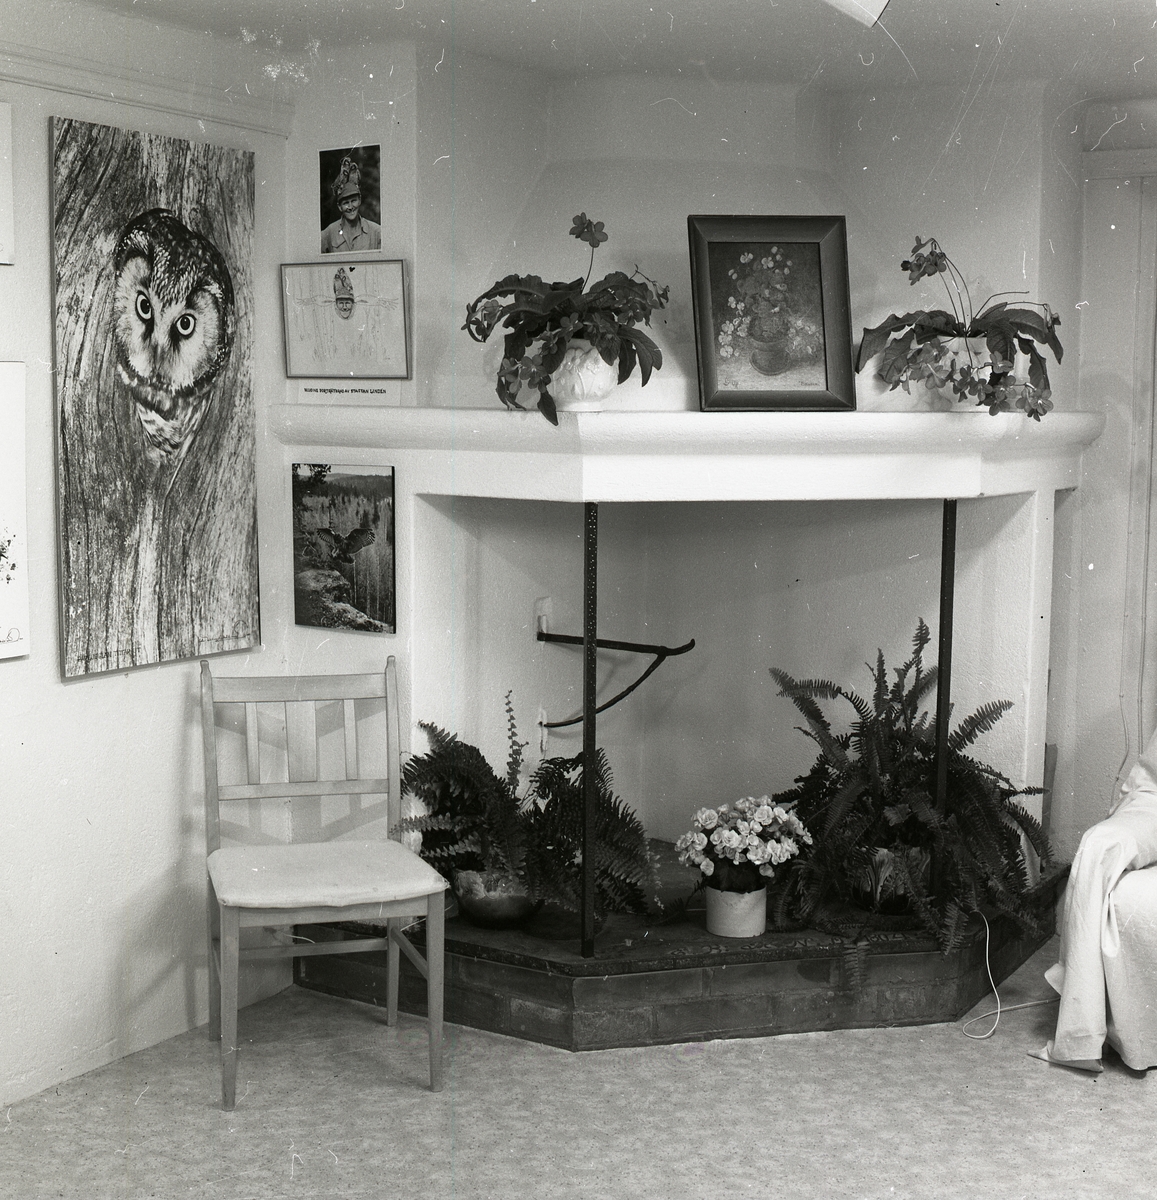 Ett rum med öppen spis, växter, stol och tavlor föreställande Hilding Mickelsson fotografier.